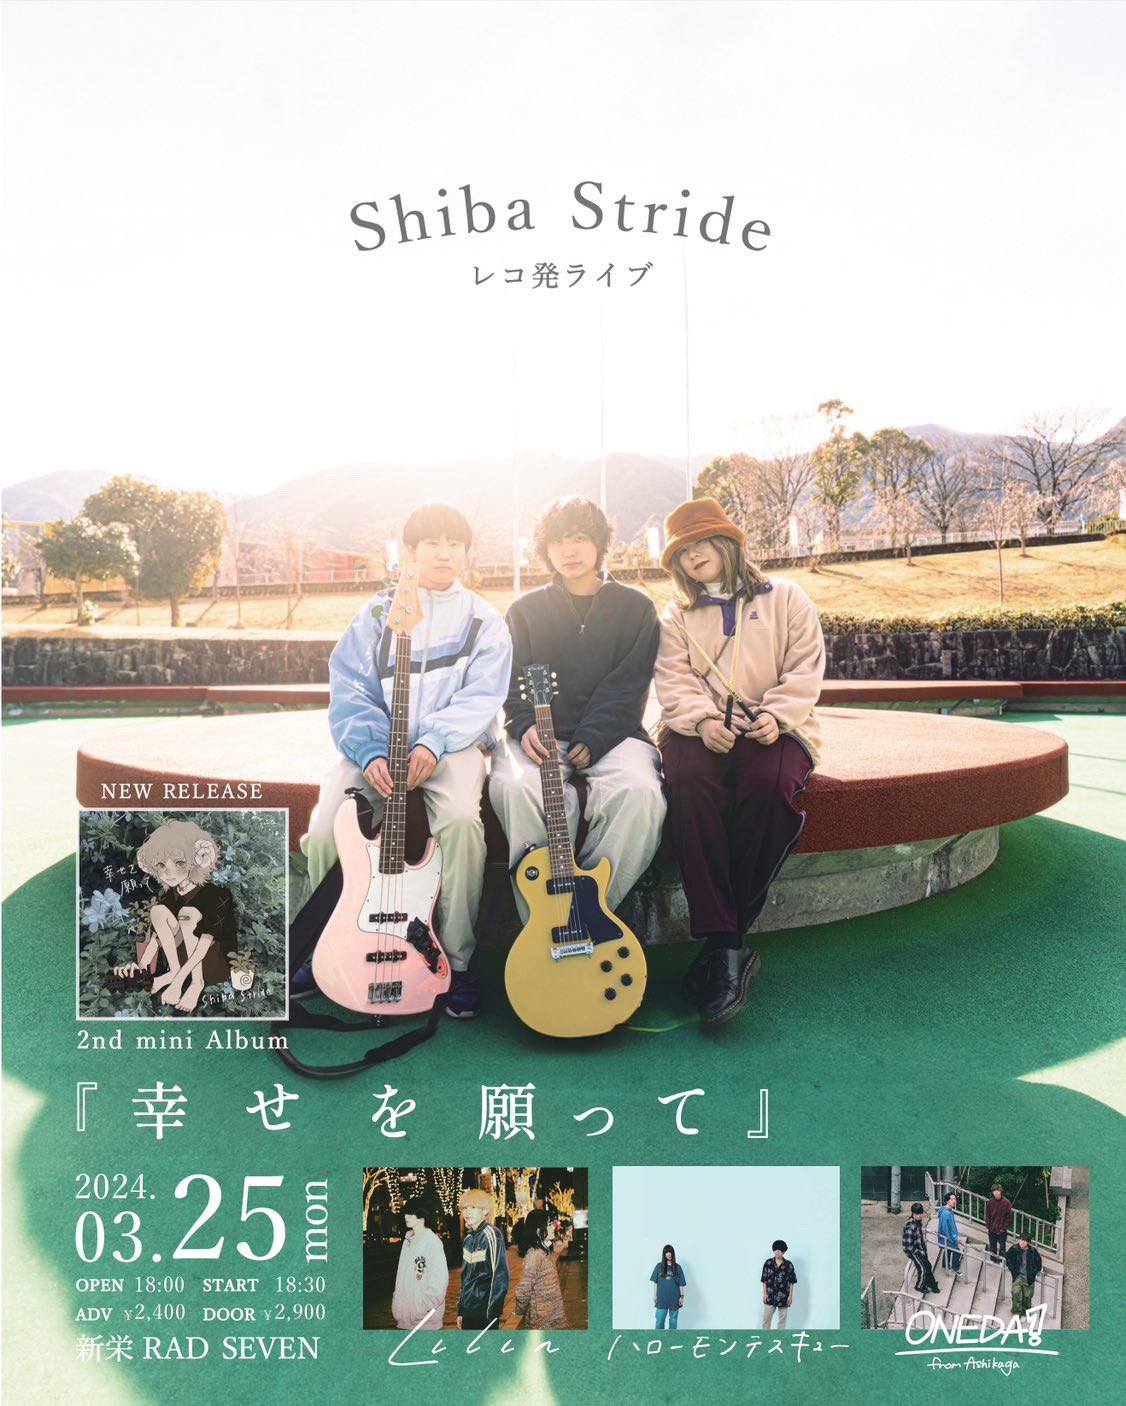 Shiba Stride レコ発ライブ 『幸せを願って』